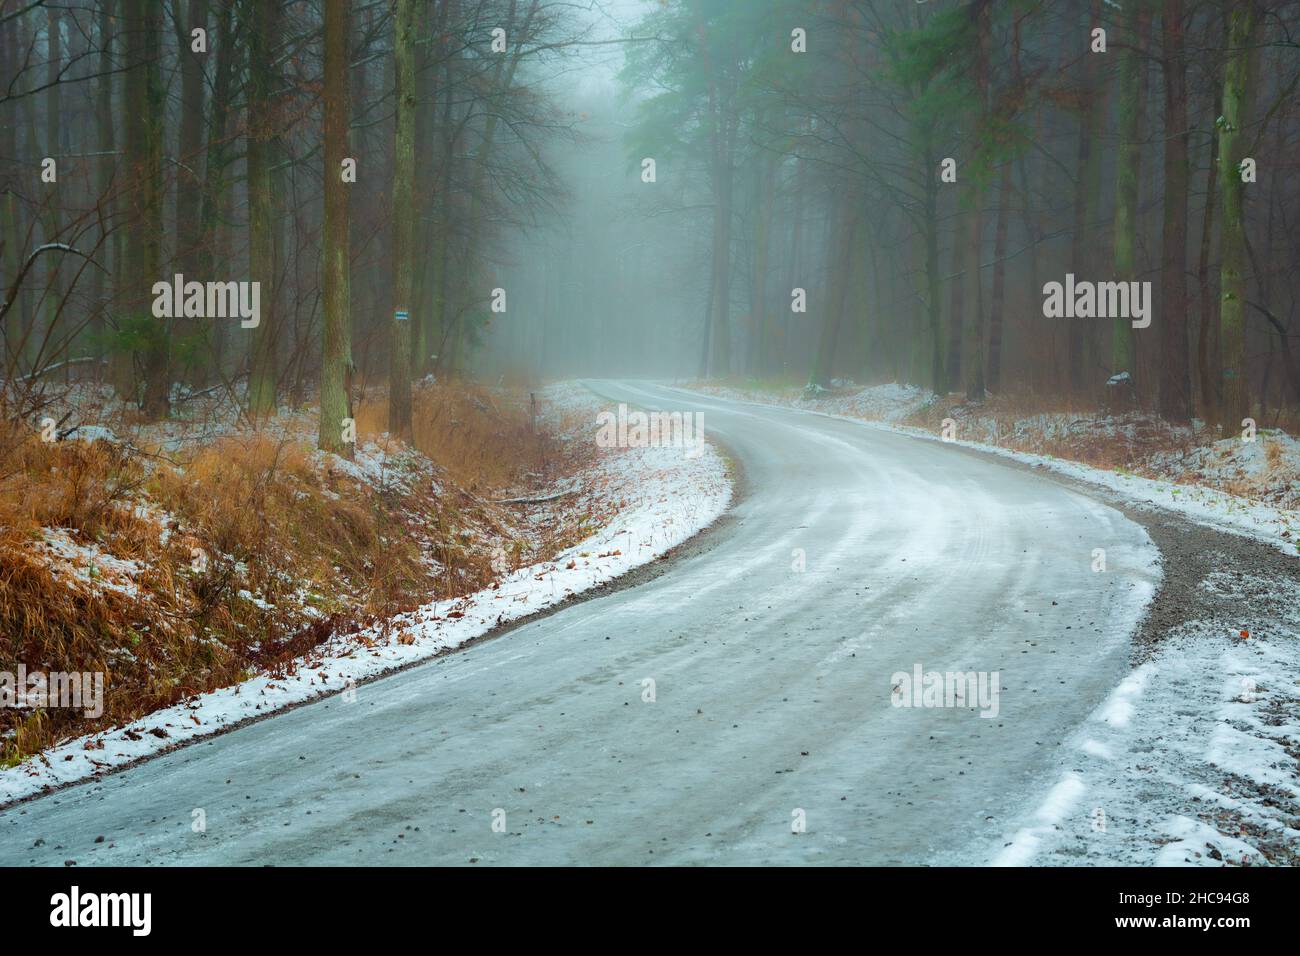 Route de gravier glacée à travers une forêt brumeuse, Noviny, Pologne Banque D'Images